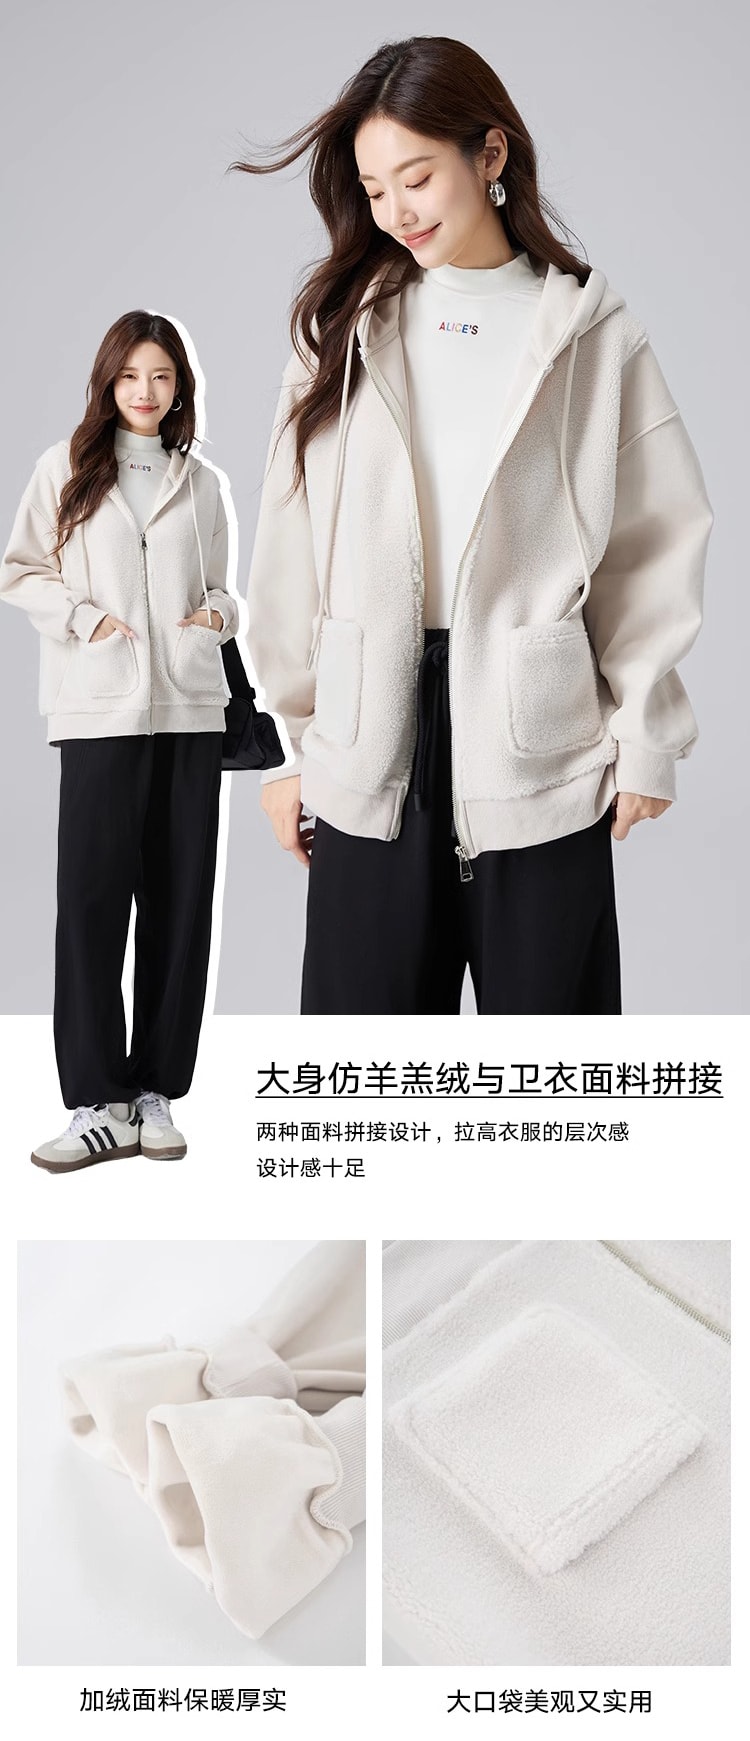 【中国直邮】HSPM 新款拼接连帽卫衣外套 米白色 L